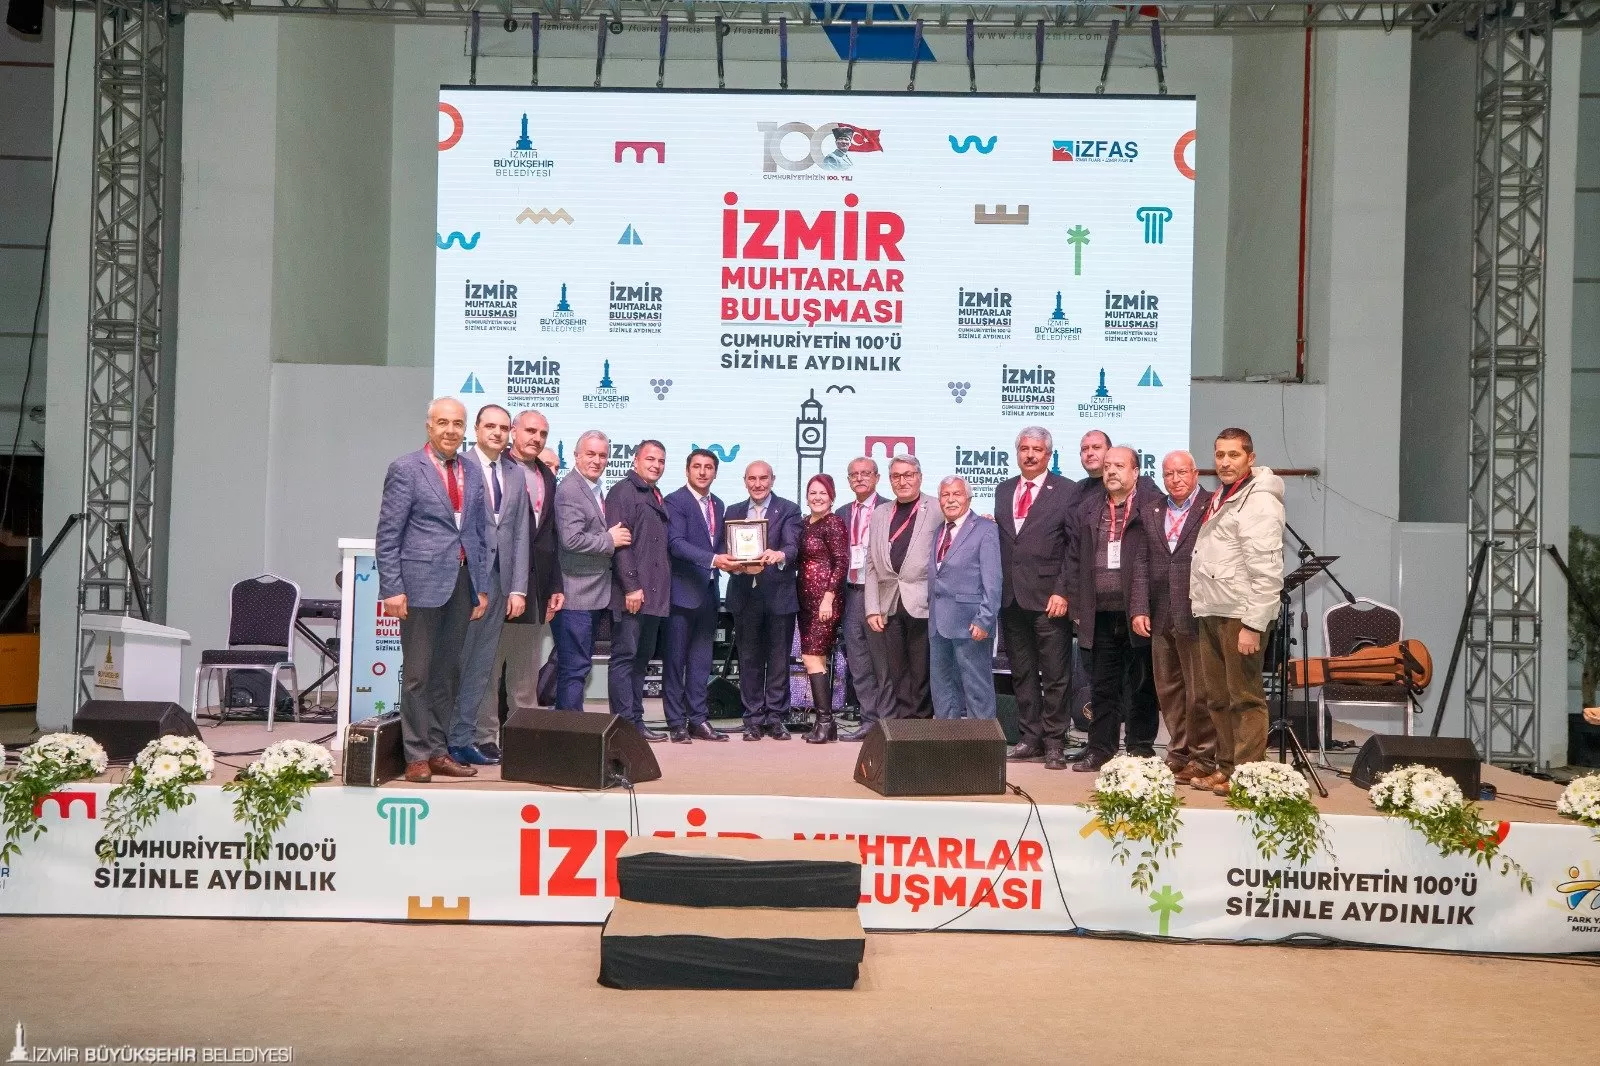 İzmir Büyükşehir Belediyesi tarafından düzenlenen “Fark Yaratan Muhtarlar” etkinliği kapsamında bu yıl dört kategoride toplam 10 muhtar ödüle layık görüldü. 